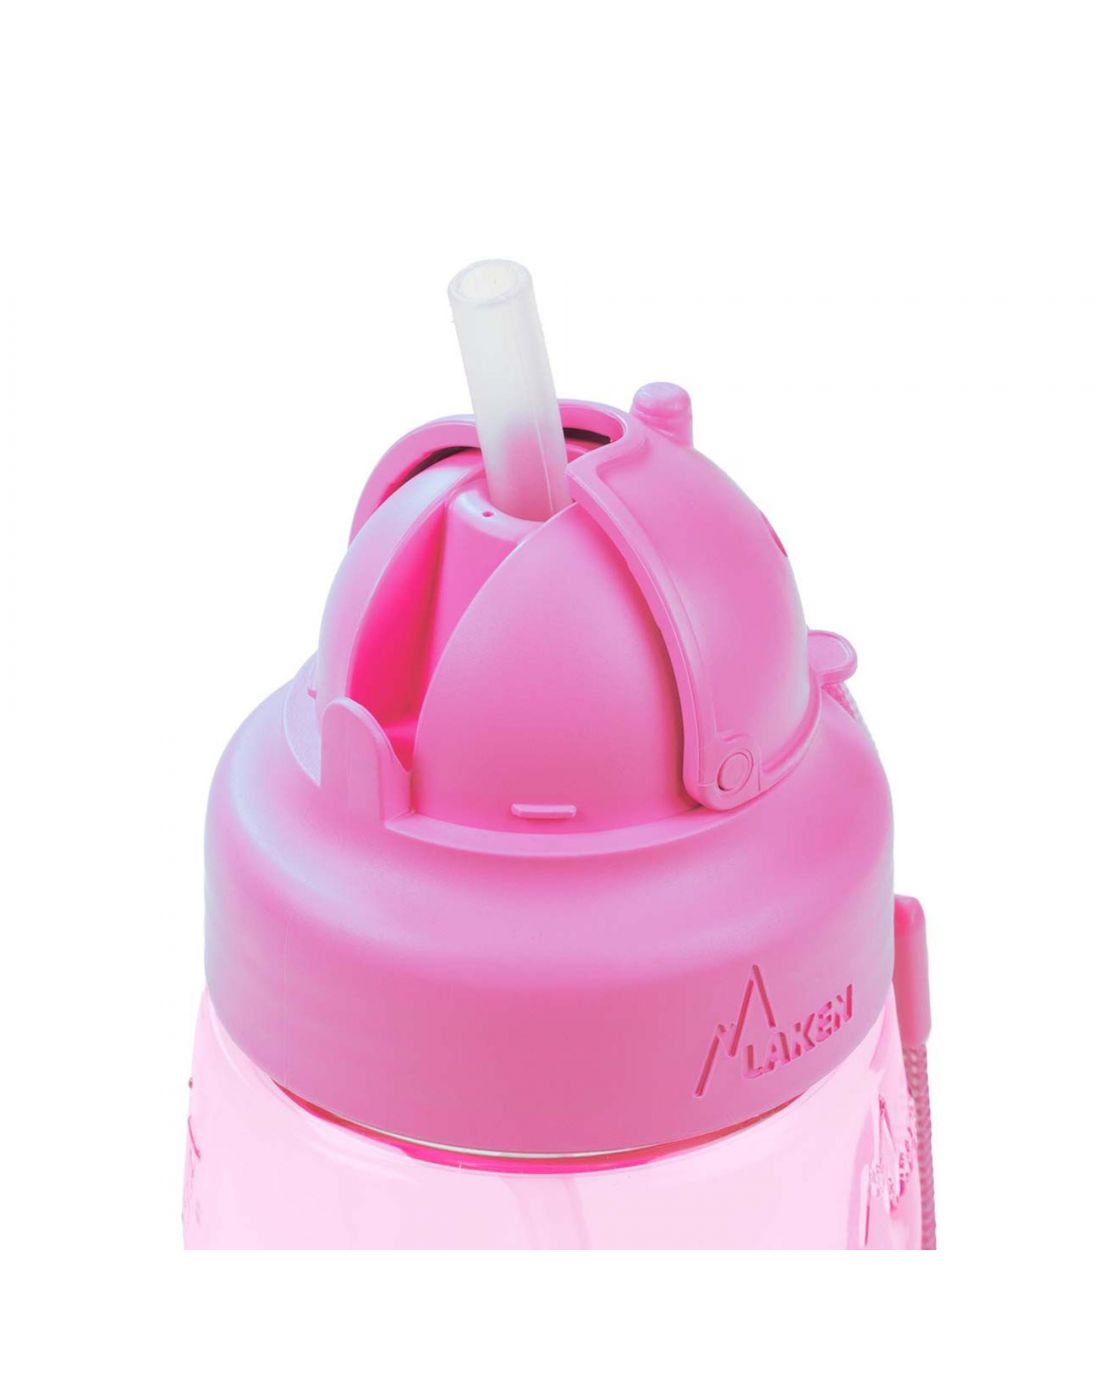 Παιδικό Μπουκάλι Με καλαμάκι Ροζ Imaginarium, Imaginarium, 10061551 |  LapinKids.com | LAPIN KIDS